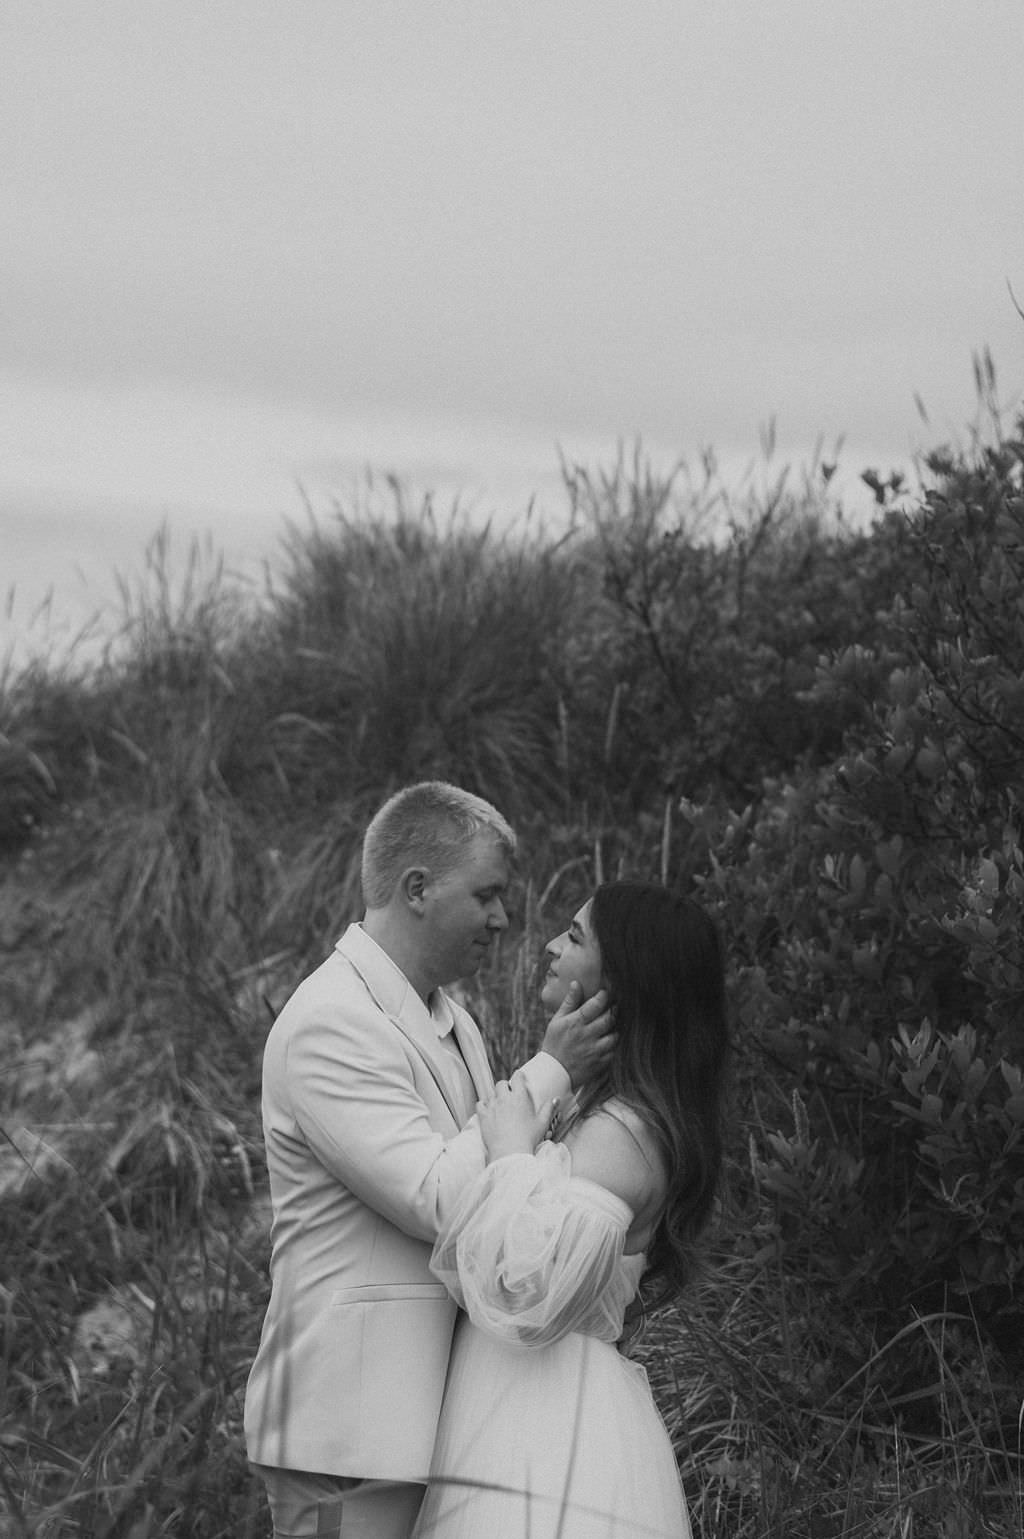 Bride at Groom during first look at beach elopement location at Manzanita Oregon.